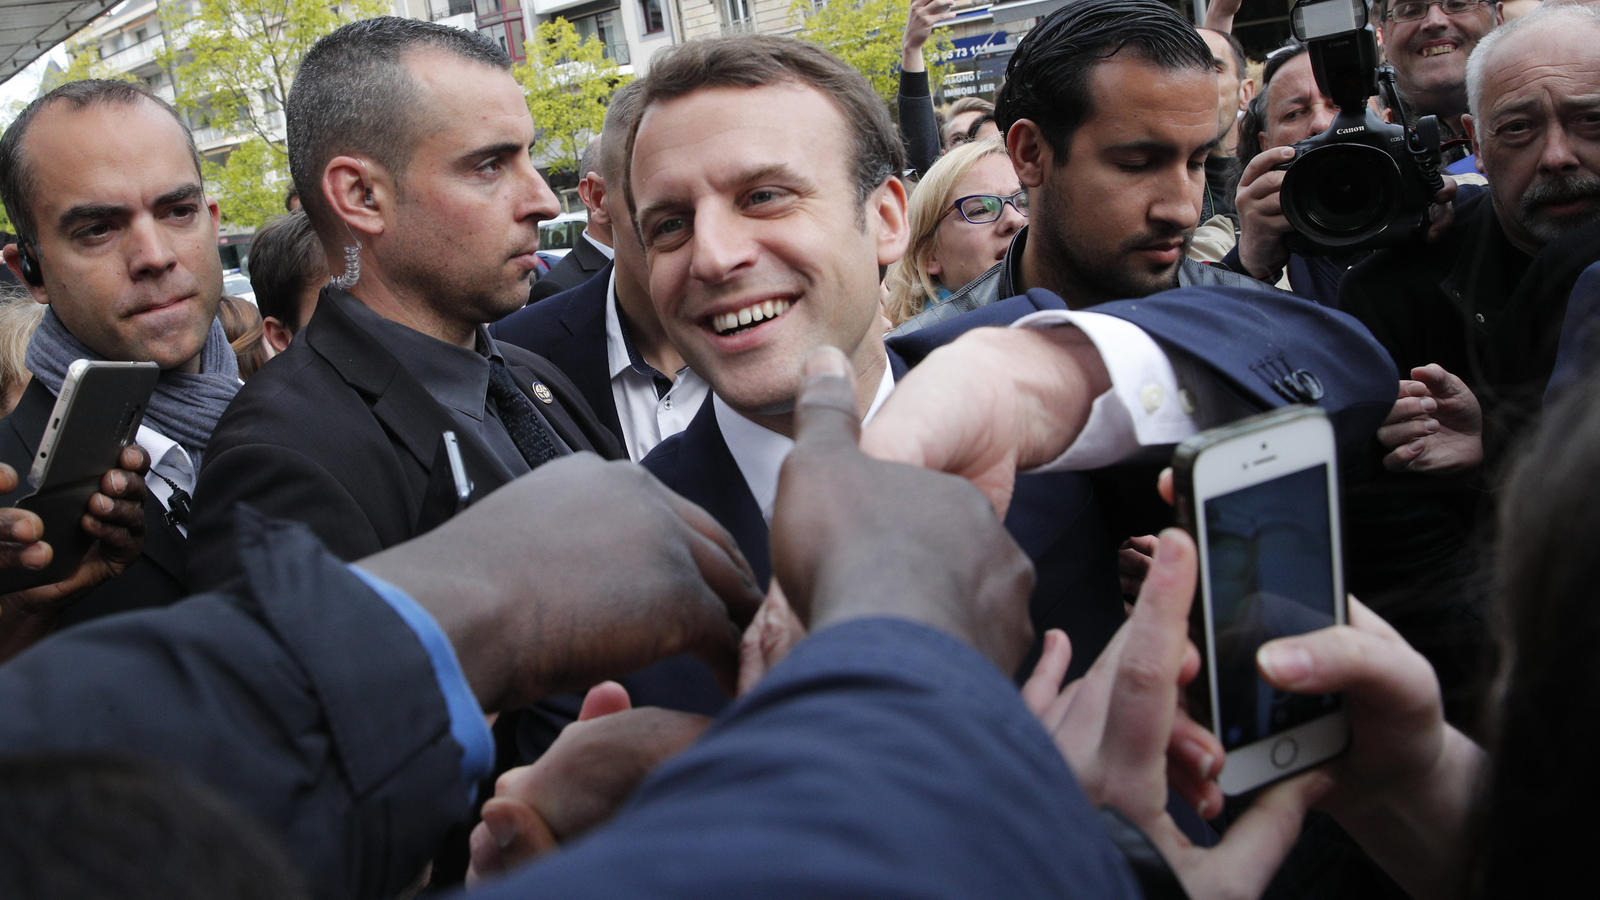 dpatopbilder - Der sozialliberale Präsidentschaftskandidat Emmanuel Macron (M) begrüßt am 05.05.2017 in Rodez (Frankreich) auf einer Wahlkampfveranstaltung seine Anhänger. Die Franzosen wählen am 07. Mai in einer Stichwahl ihr neues Staatsoberhaupt. 